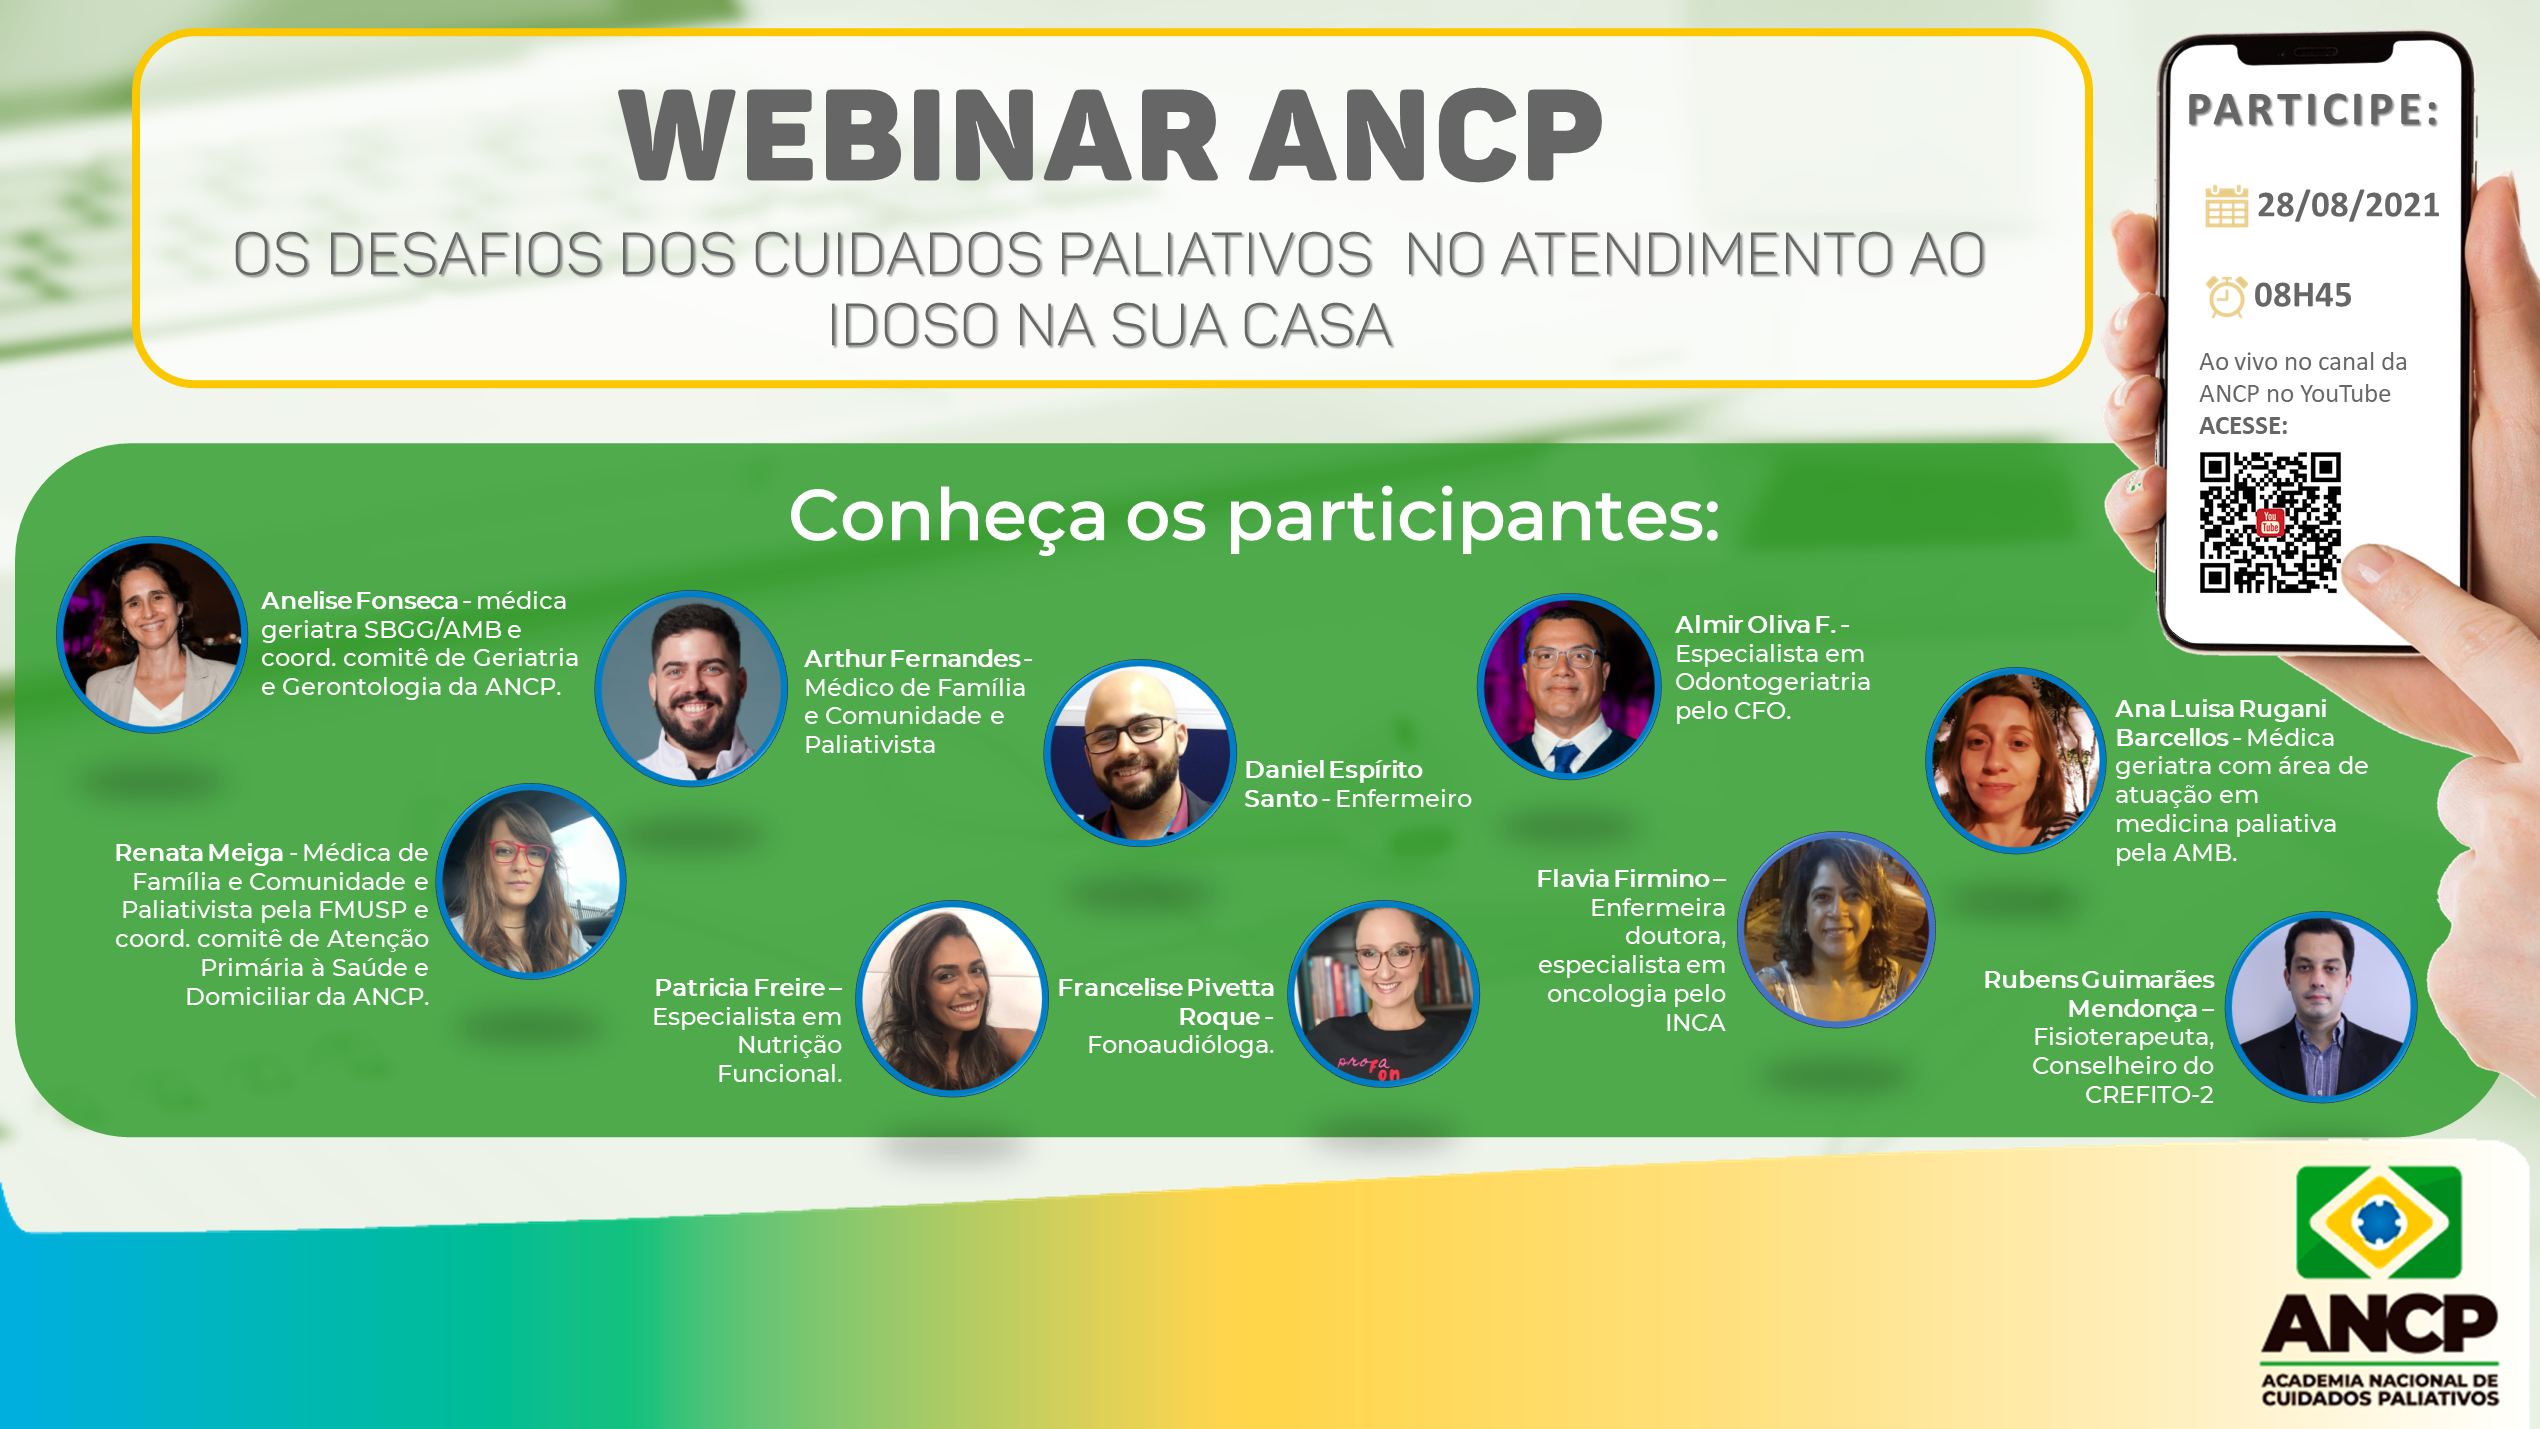 Comitês de Geriatria e Gerontologia e Atenção Primária à Saúde e Domiciliar da ANCP realizam Webinar